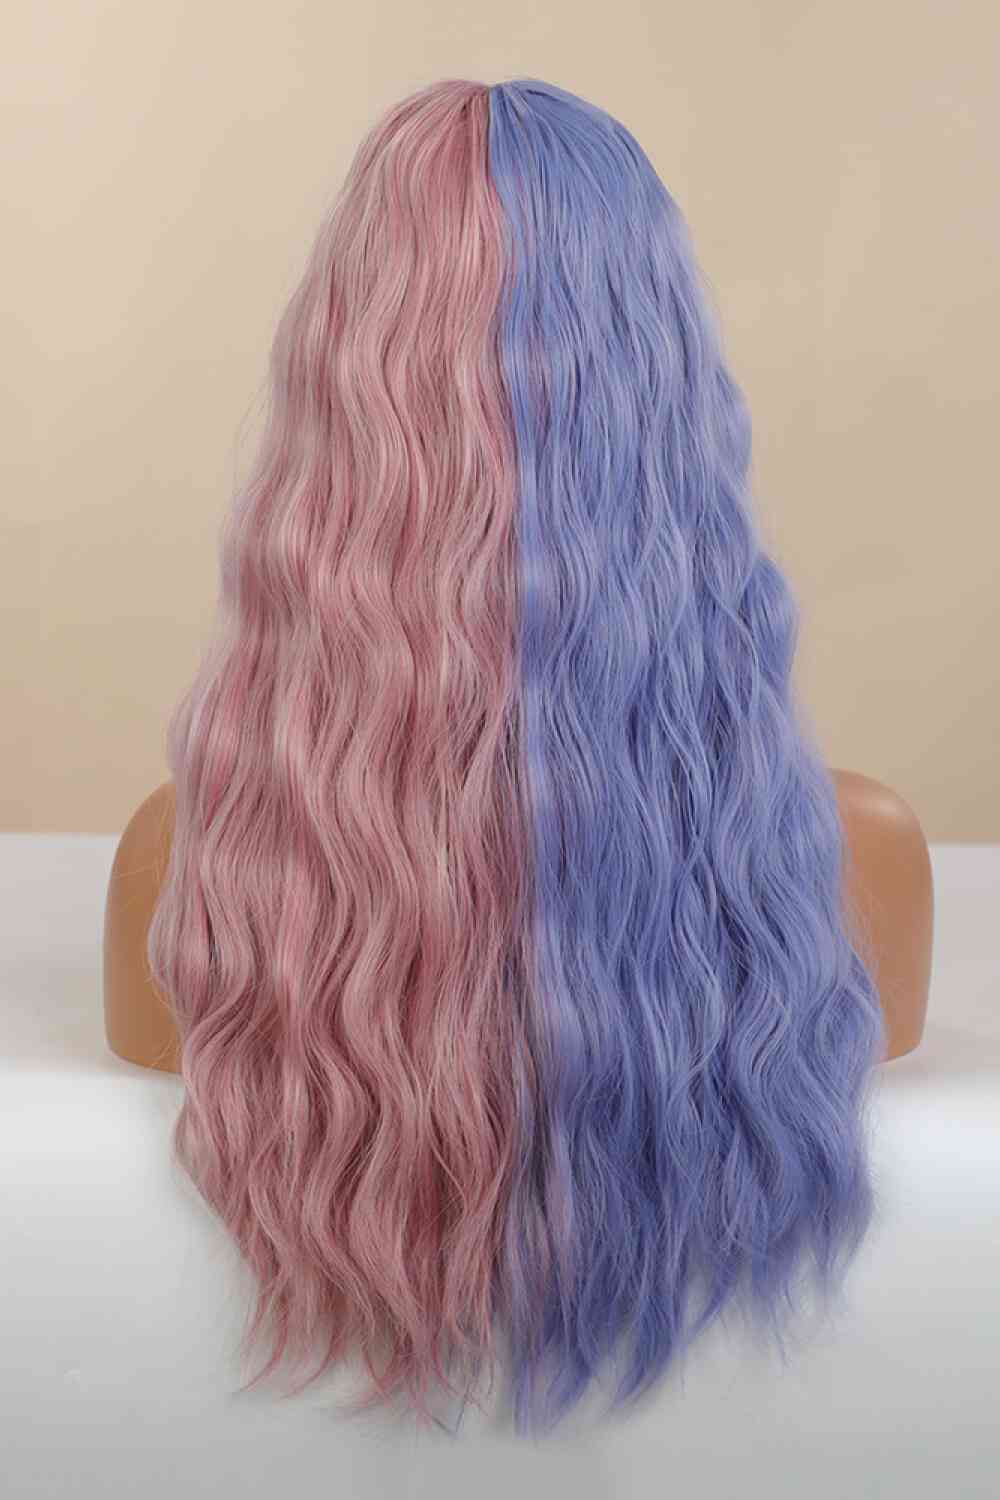 13*1" Full-Machine Wigs Synthetic Long Wave 26" in Blue/Pink Split Dye BLUE ZONE PLANET